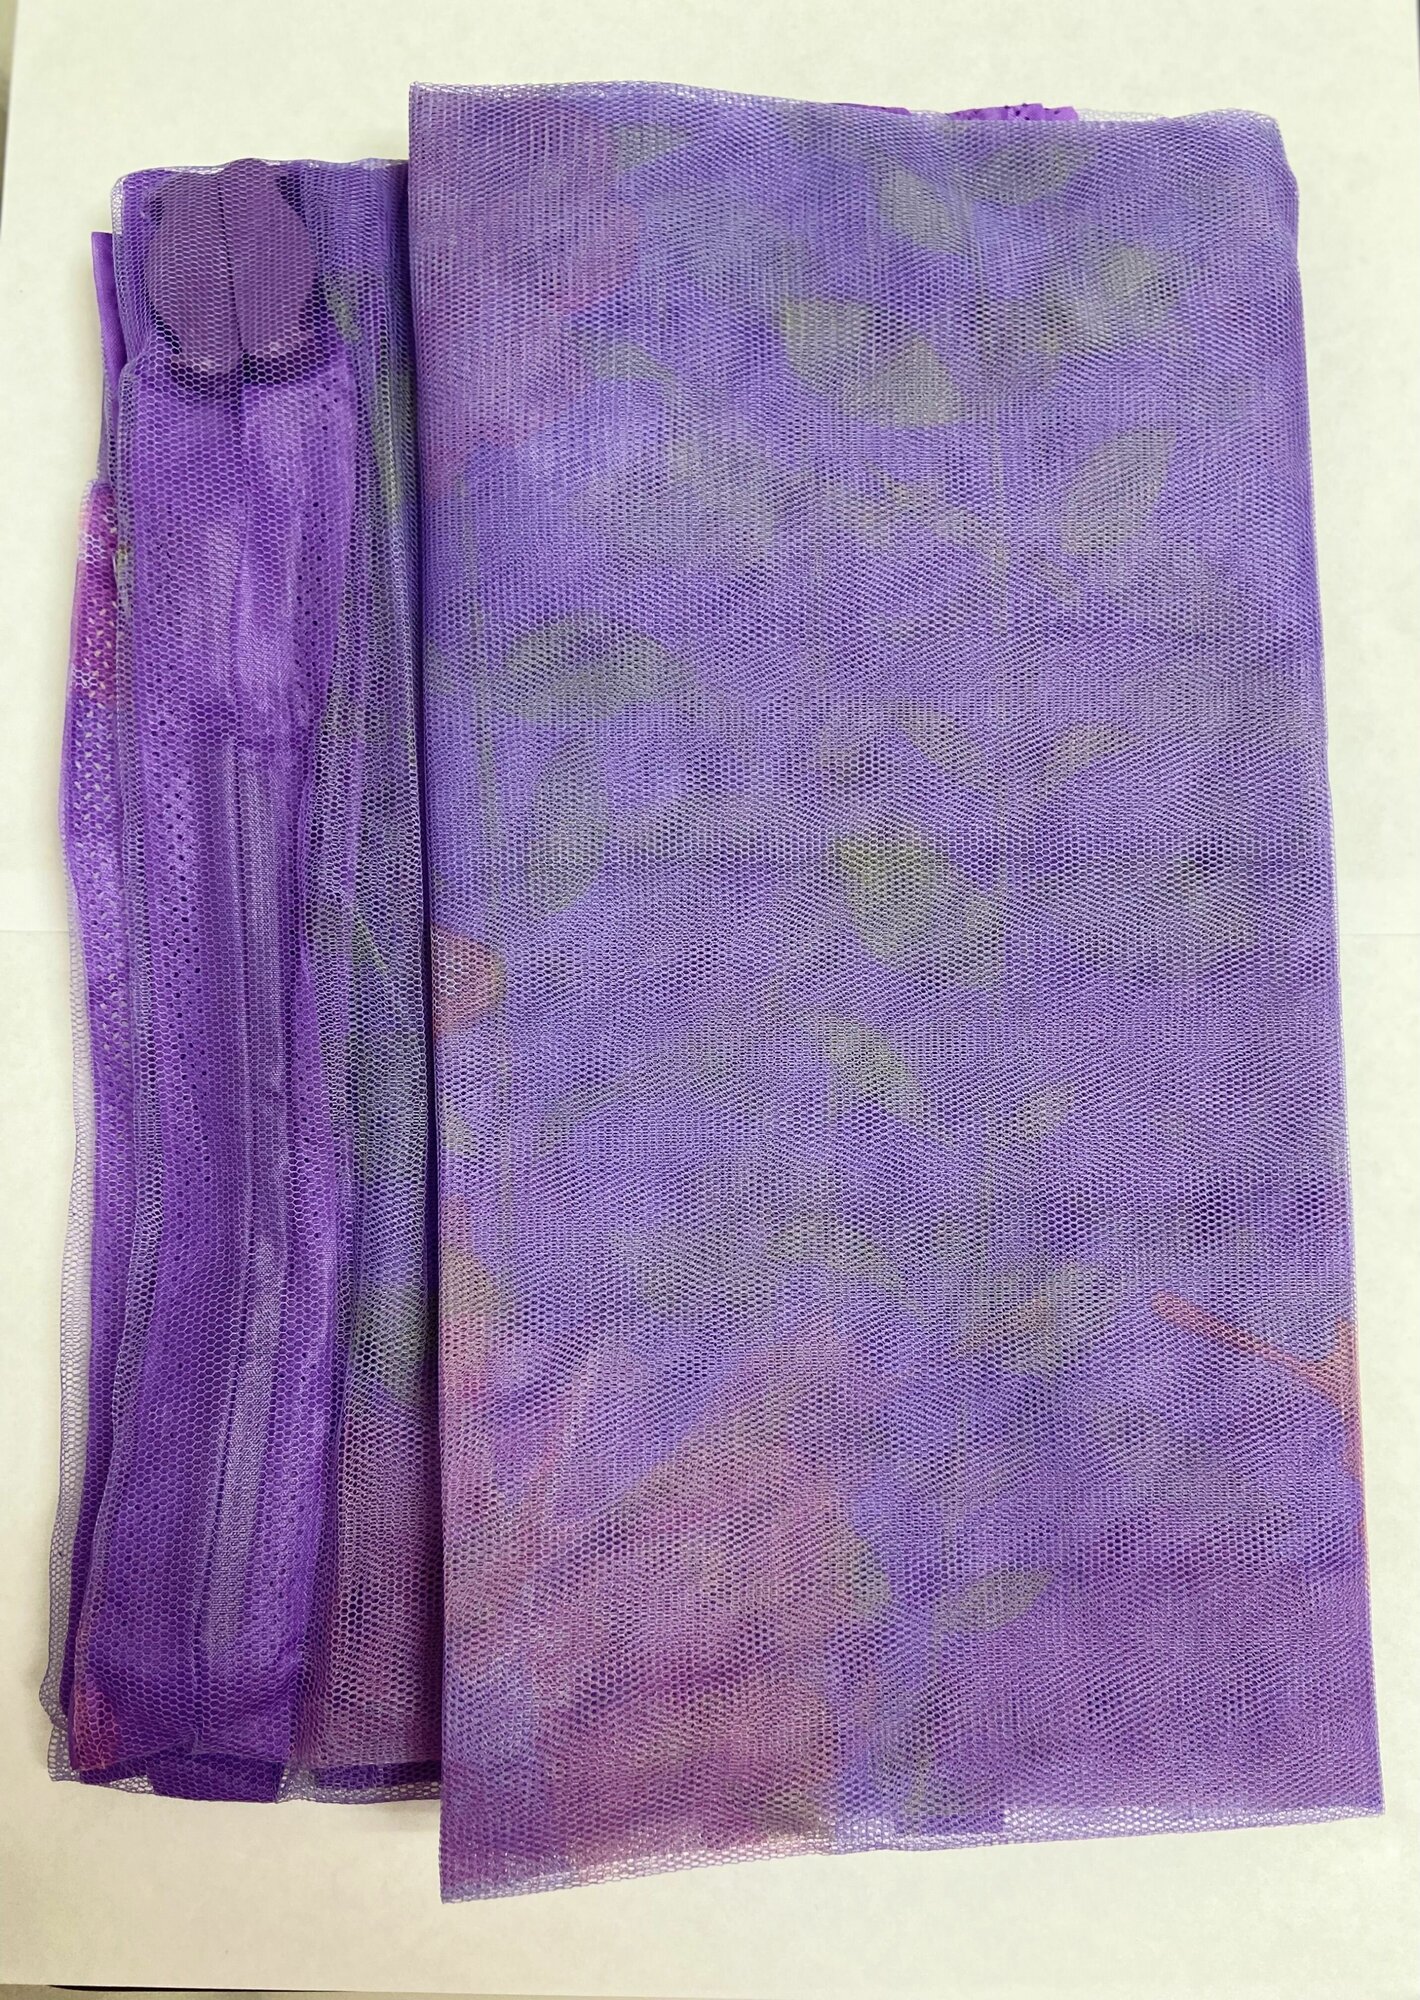 Москитная сетка для двери на магнитах с рисунком фиолетовый 100*210см